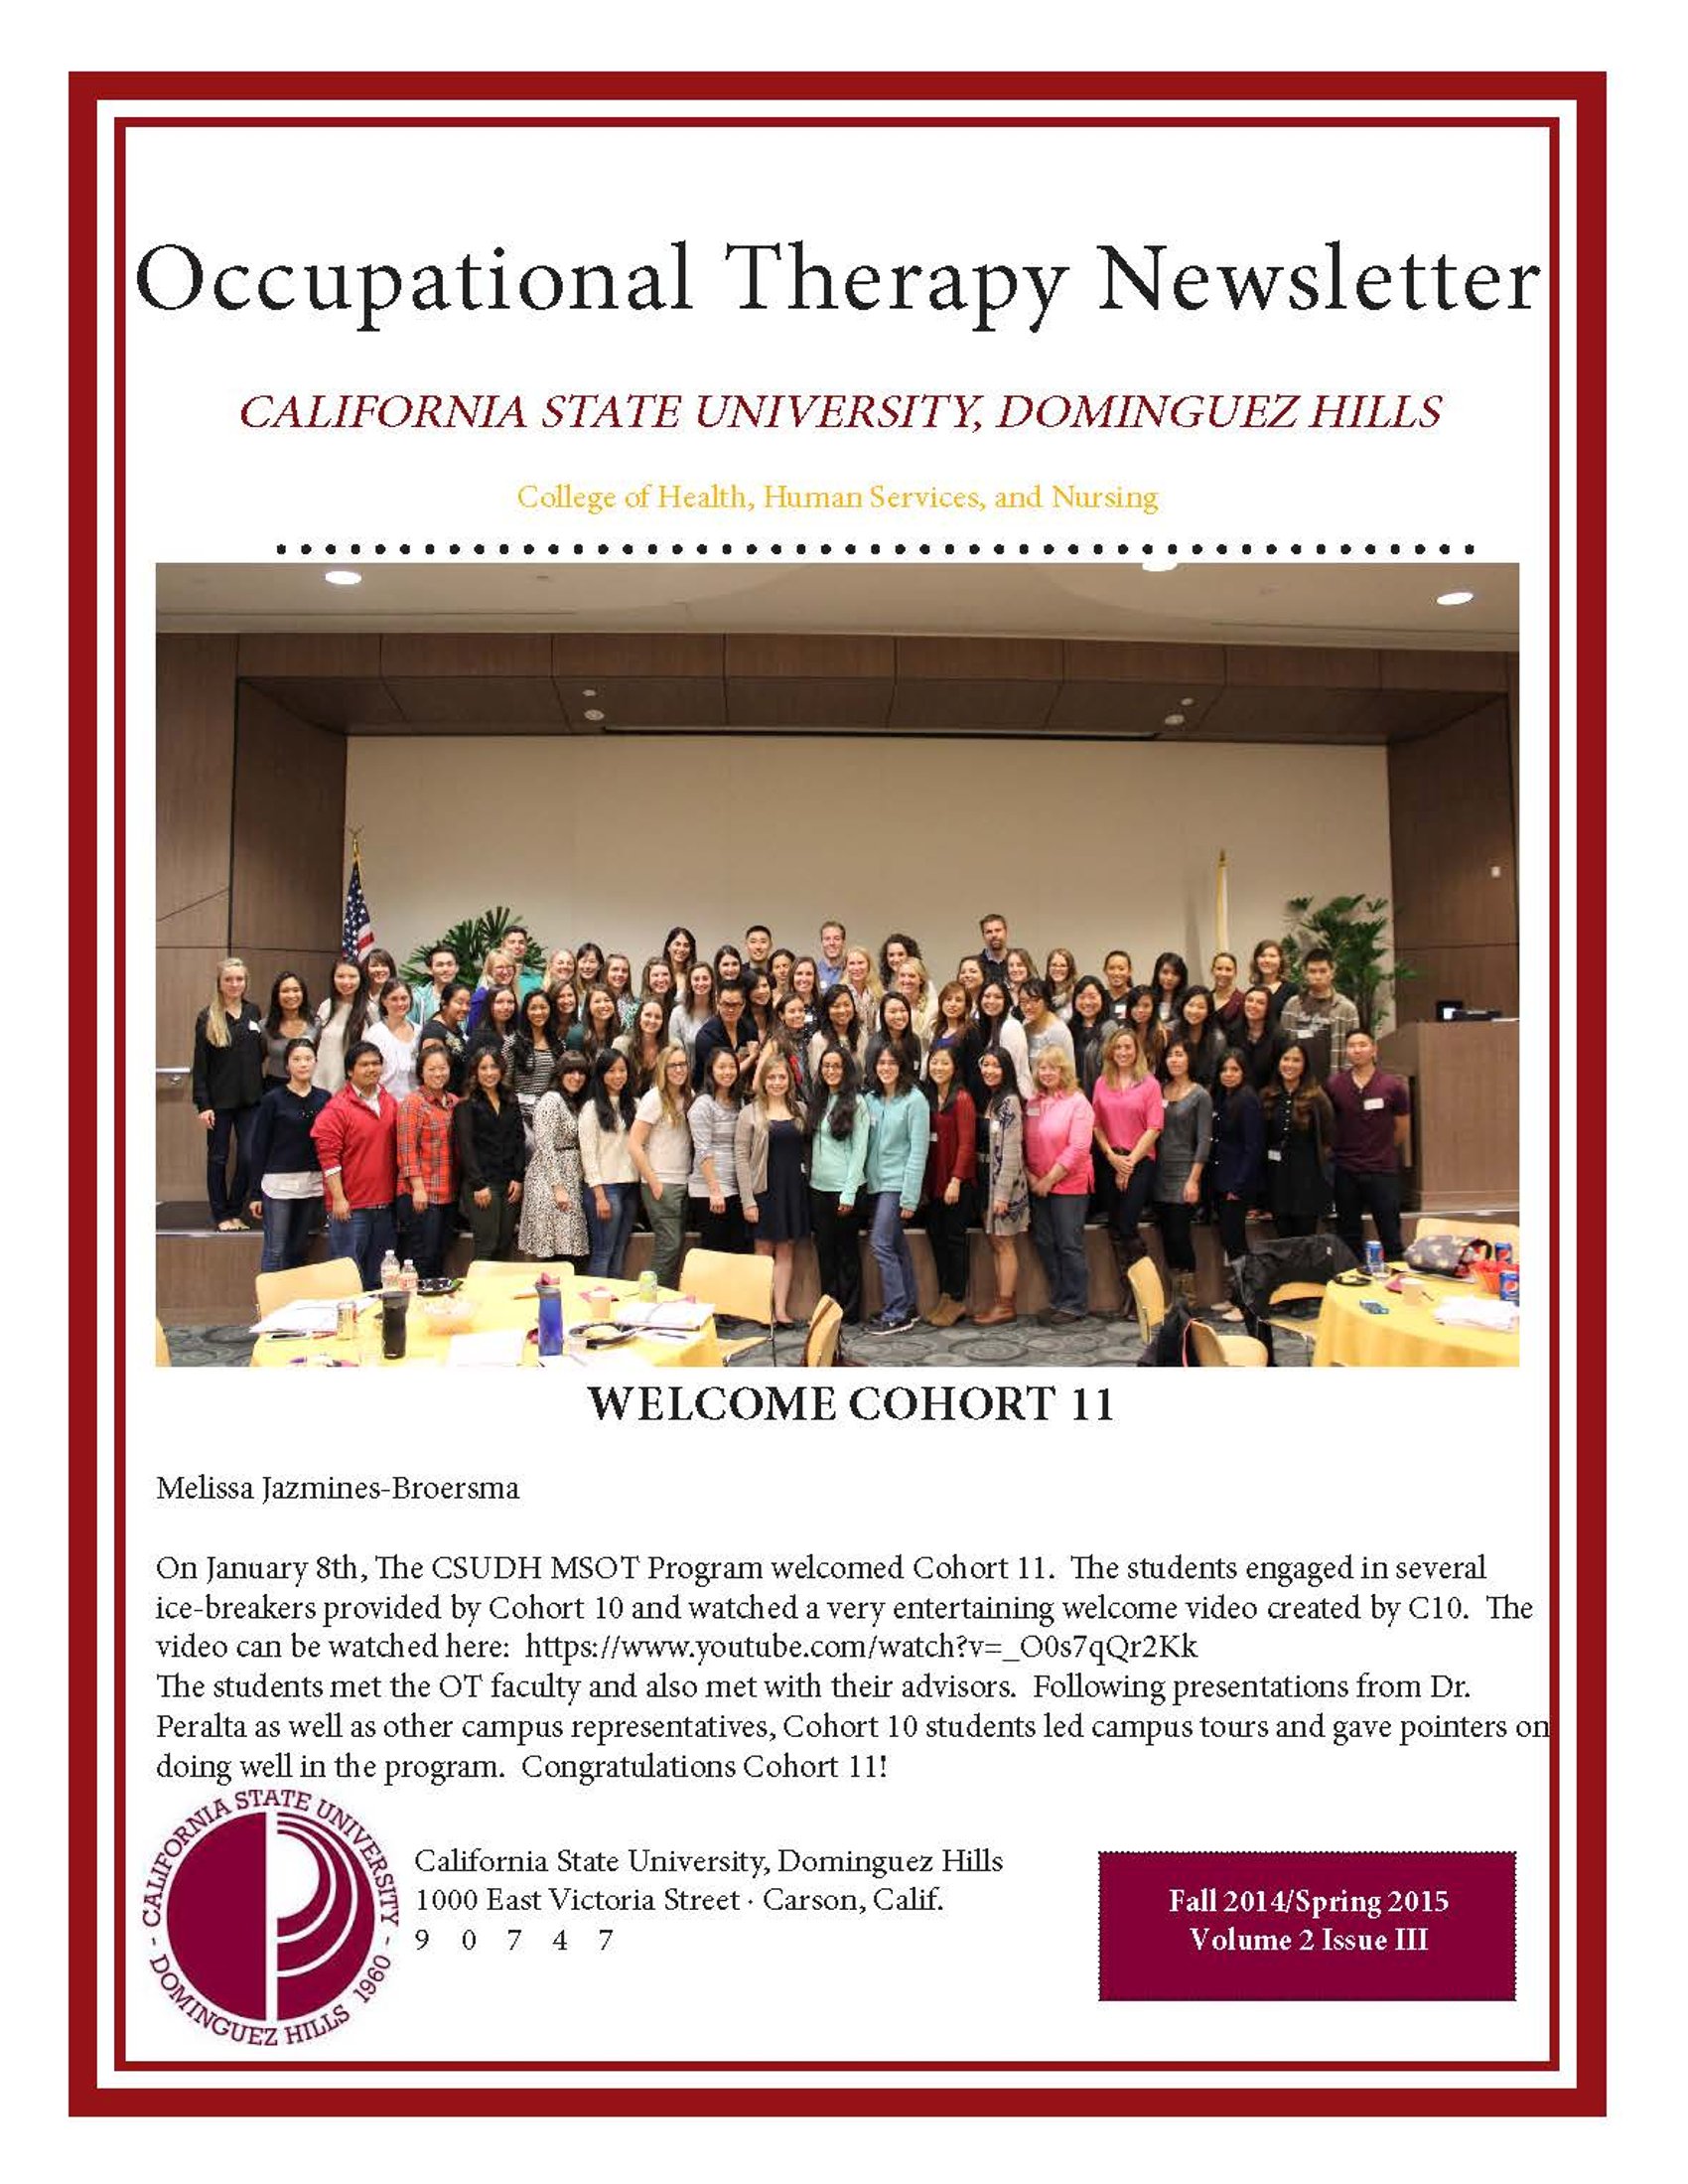 OT Fall 2014/ Spring 2015 Newsletter cover